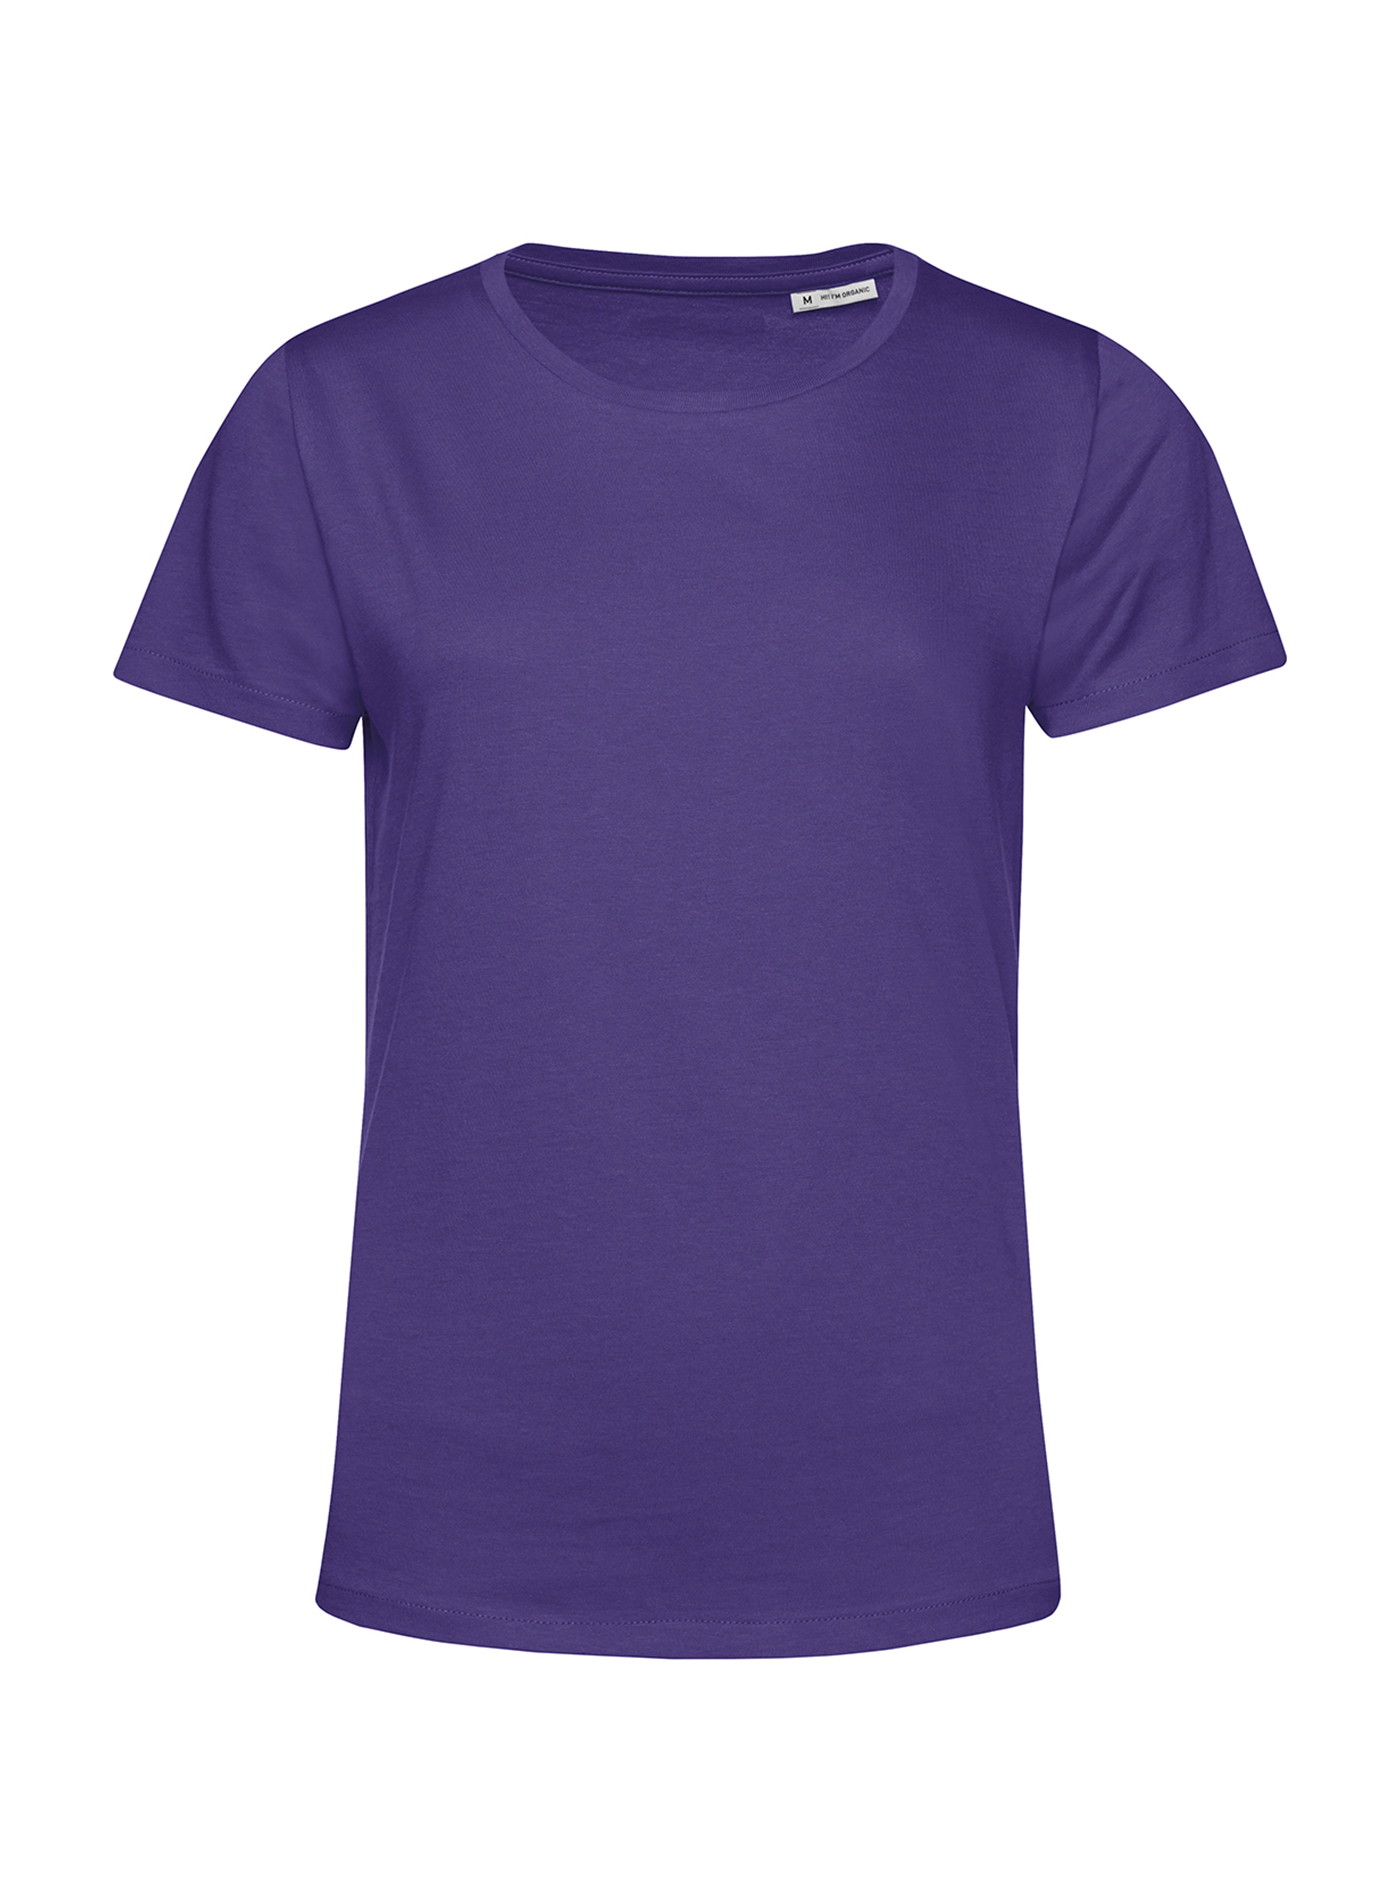 Dámské tričko B&C Collection Organic - Tmavě fialová XXL